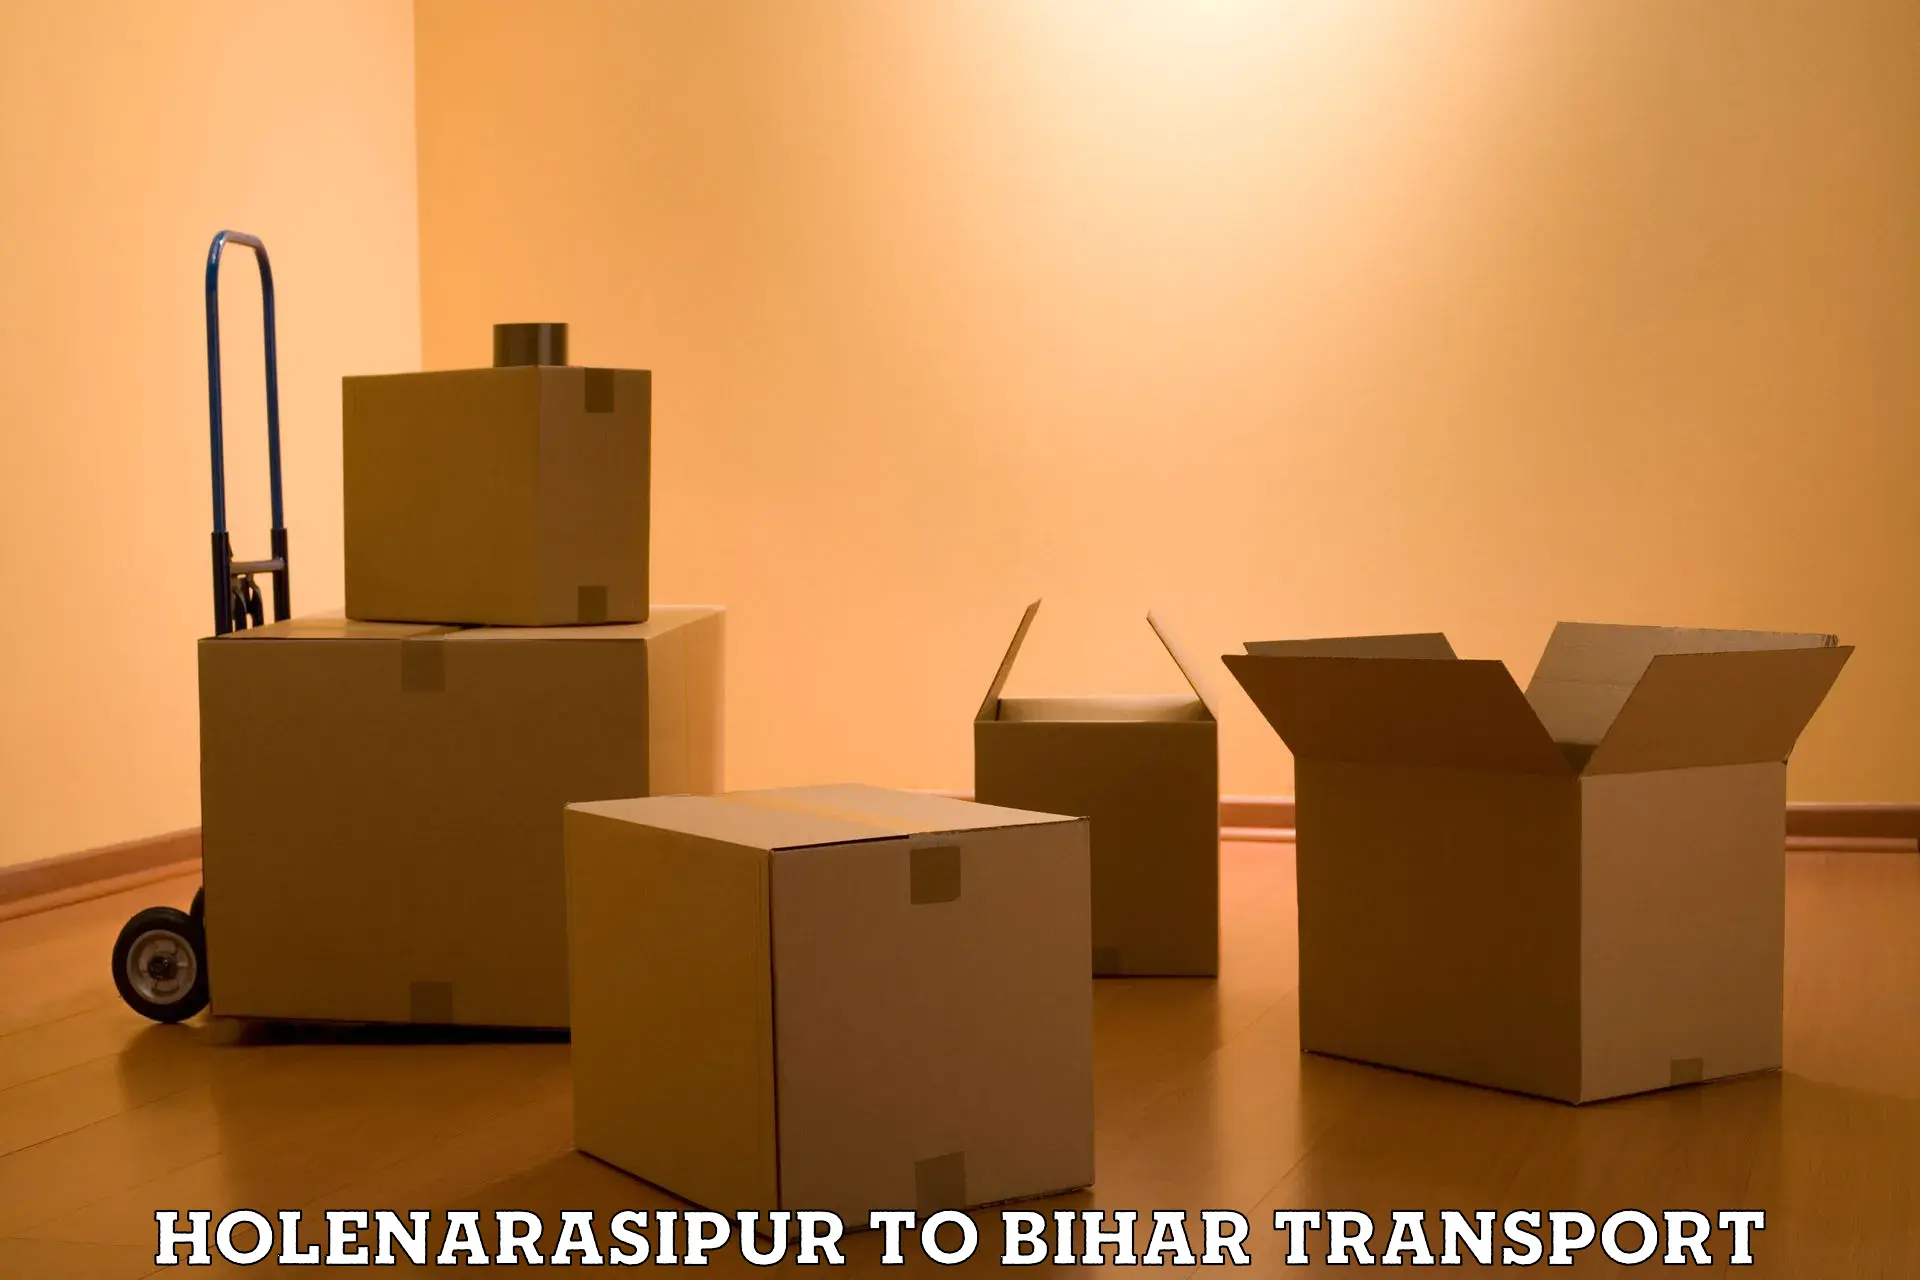 Bike shipping service Holenarasipur to Bihar Sharif